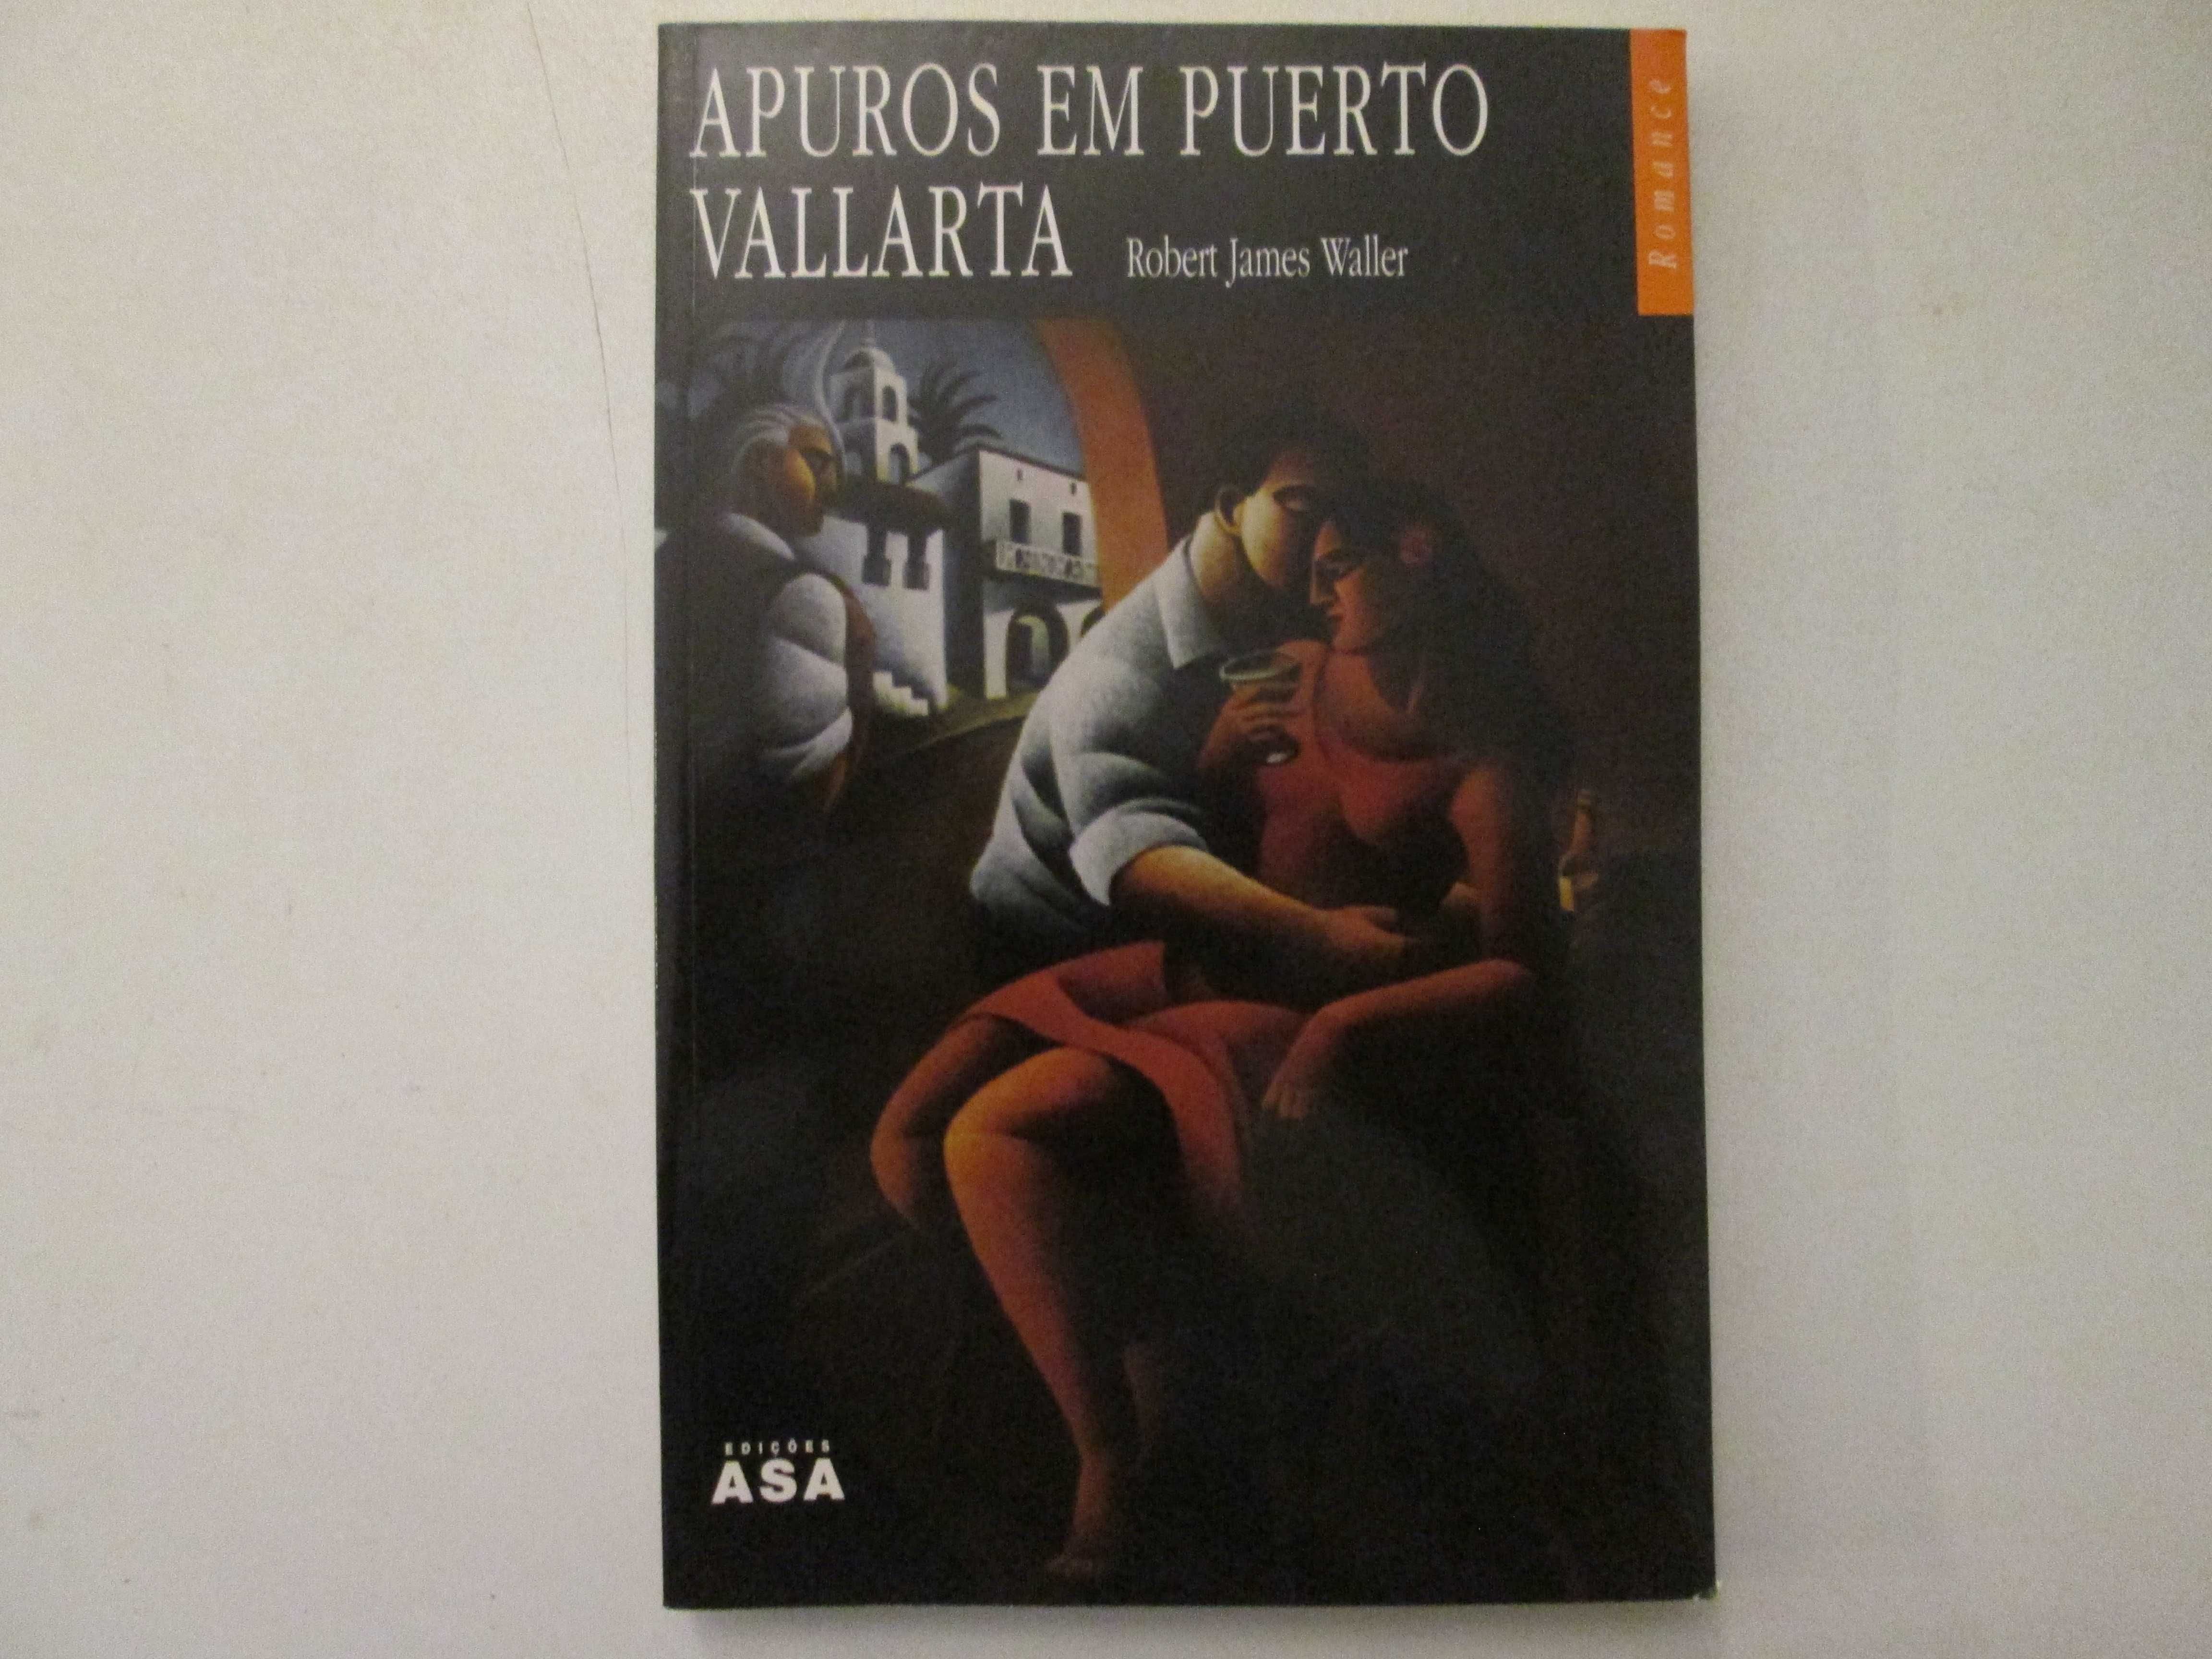 Apuros em Puerto Vallarta- Robert James Waller